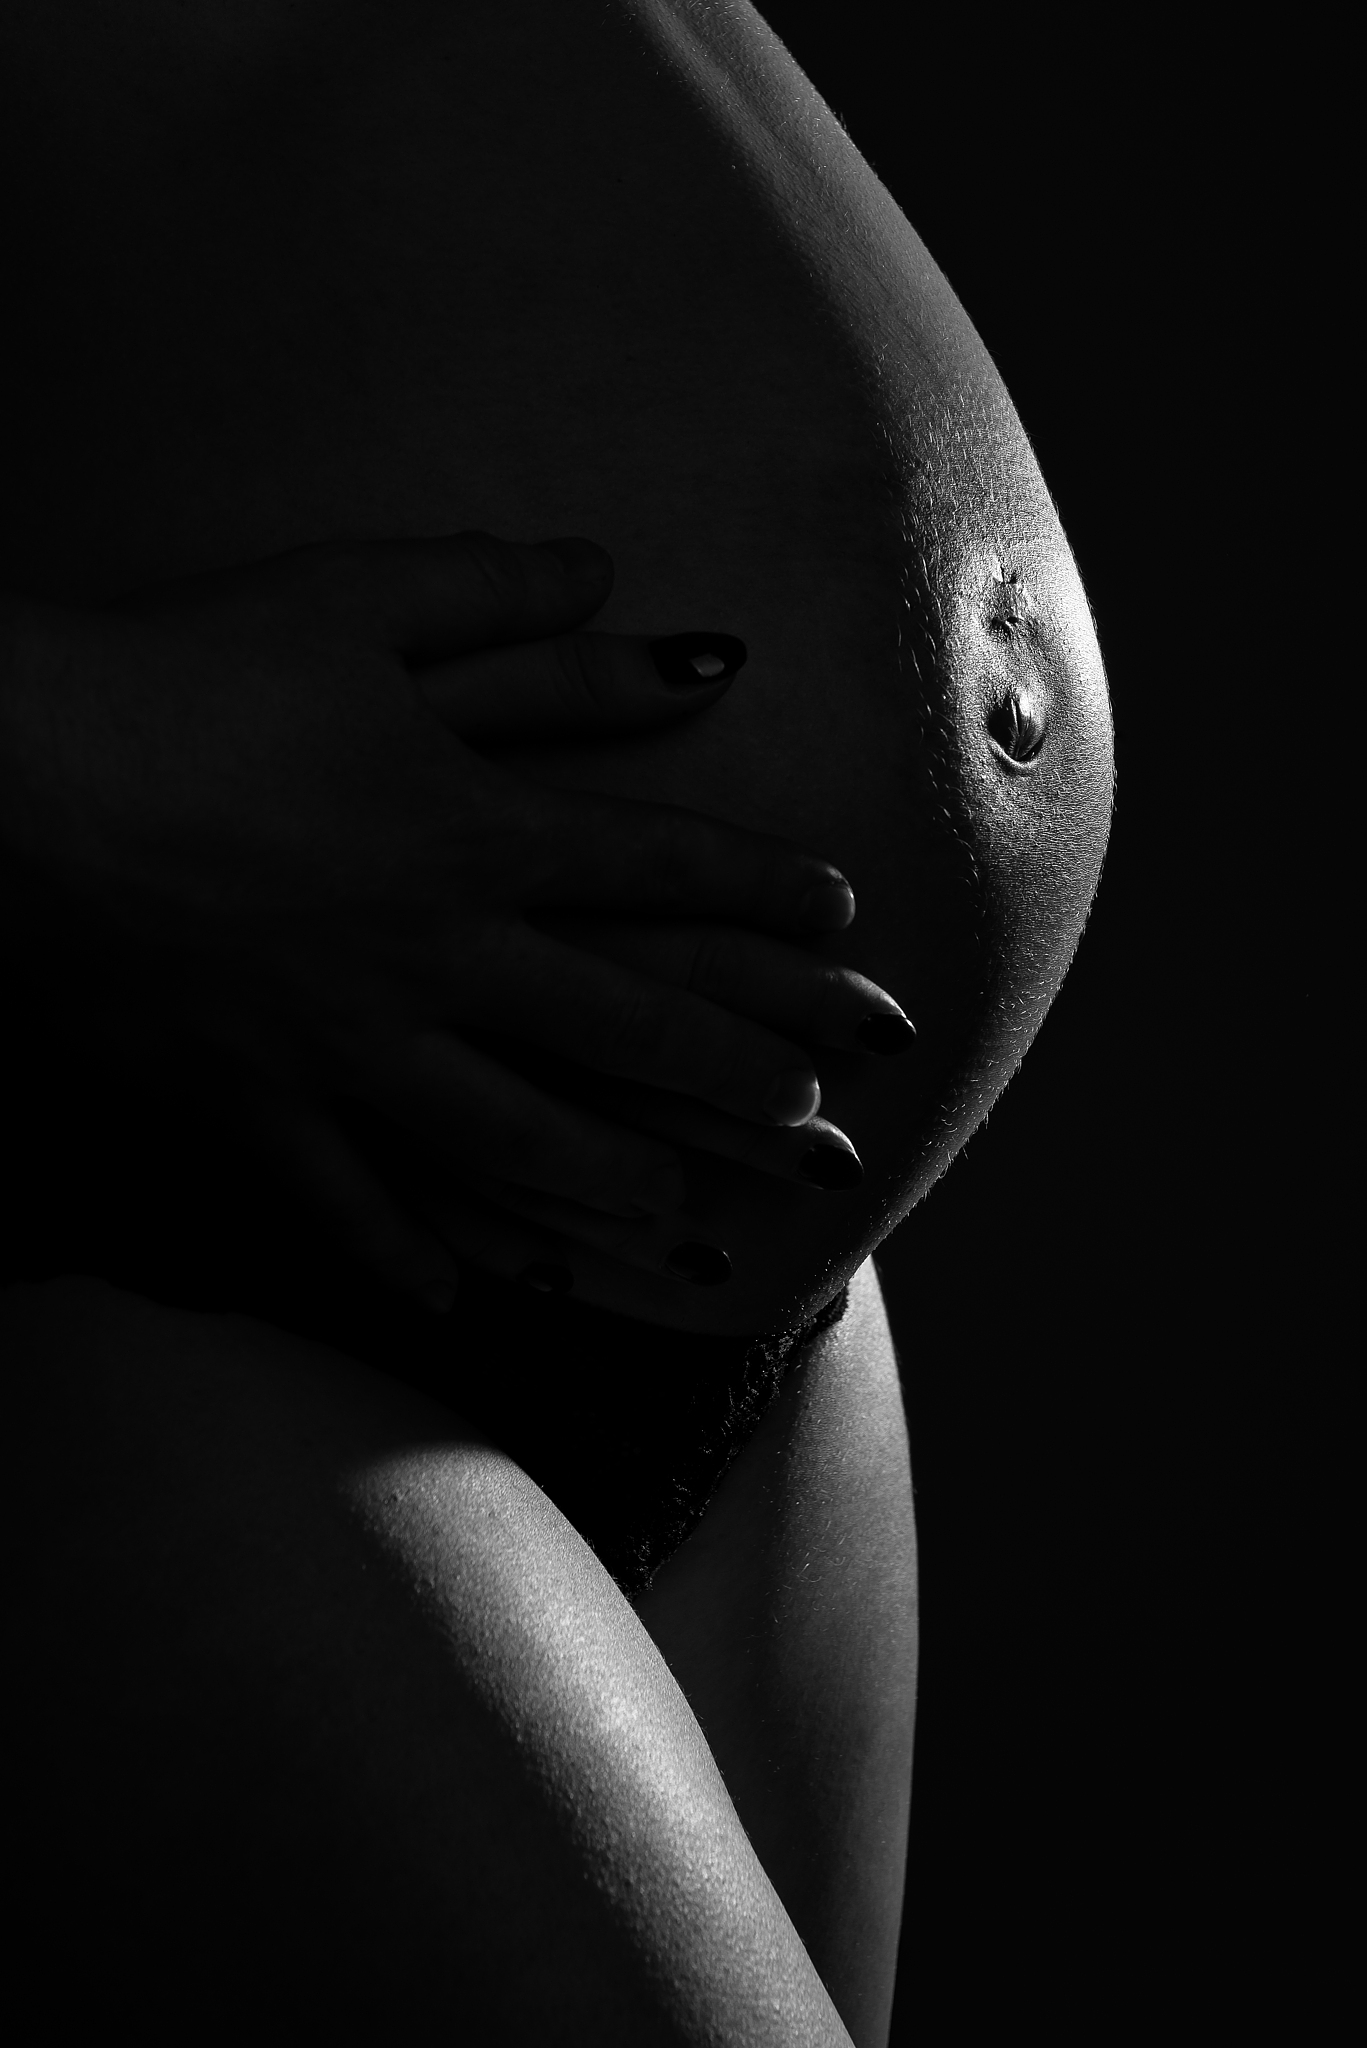 Schwangerschaftsfotografie - Planen Sie, beziehen Sie Ihre Familie mit ein und wählen Sie die richtigen Posen